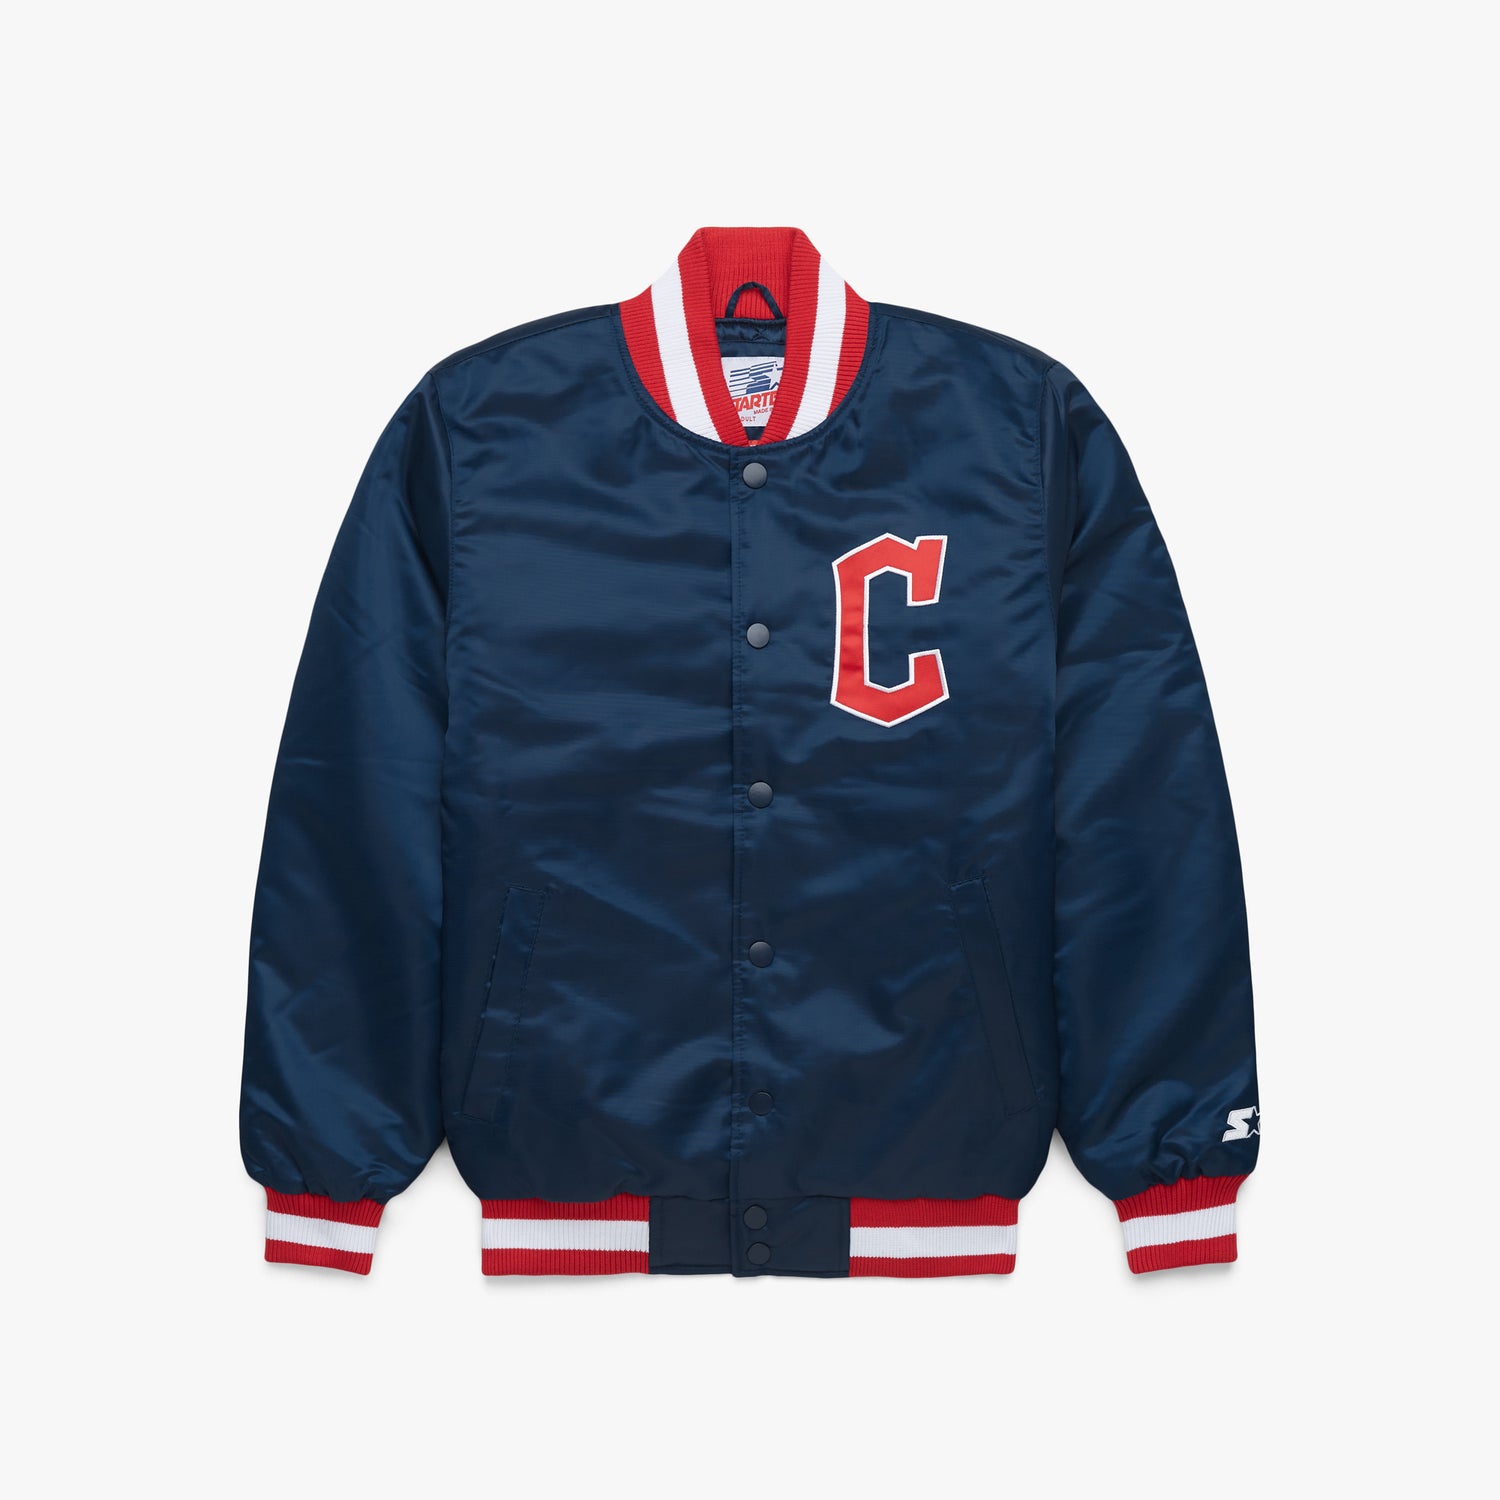 Maker of Jacket Varsity Jackets Vintage 80s MLB Cleveland Indians